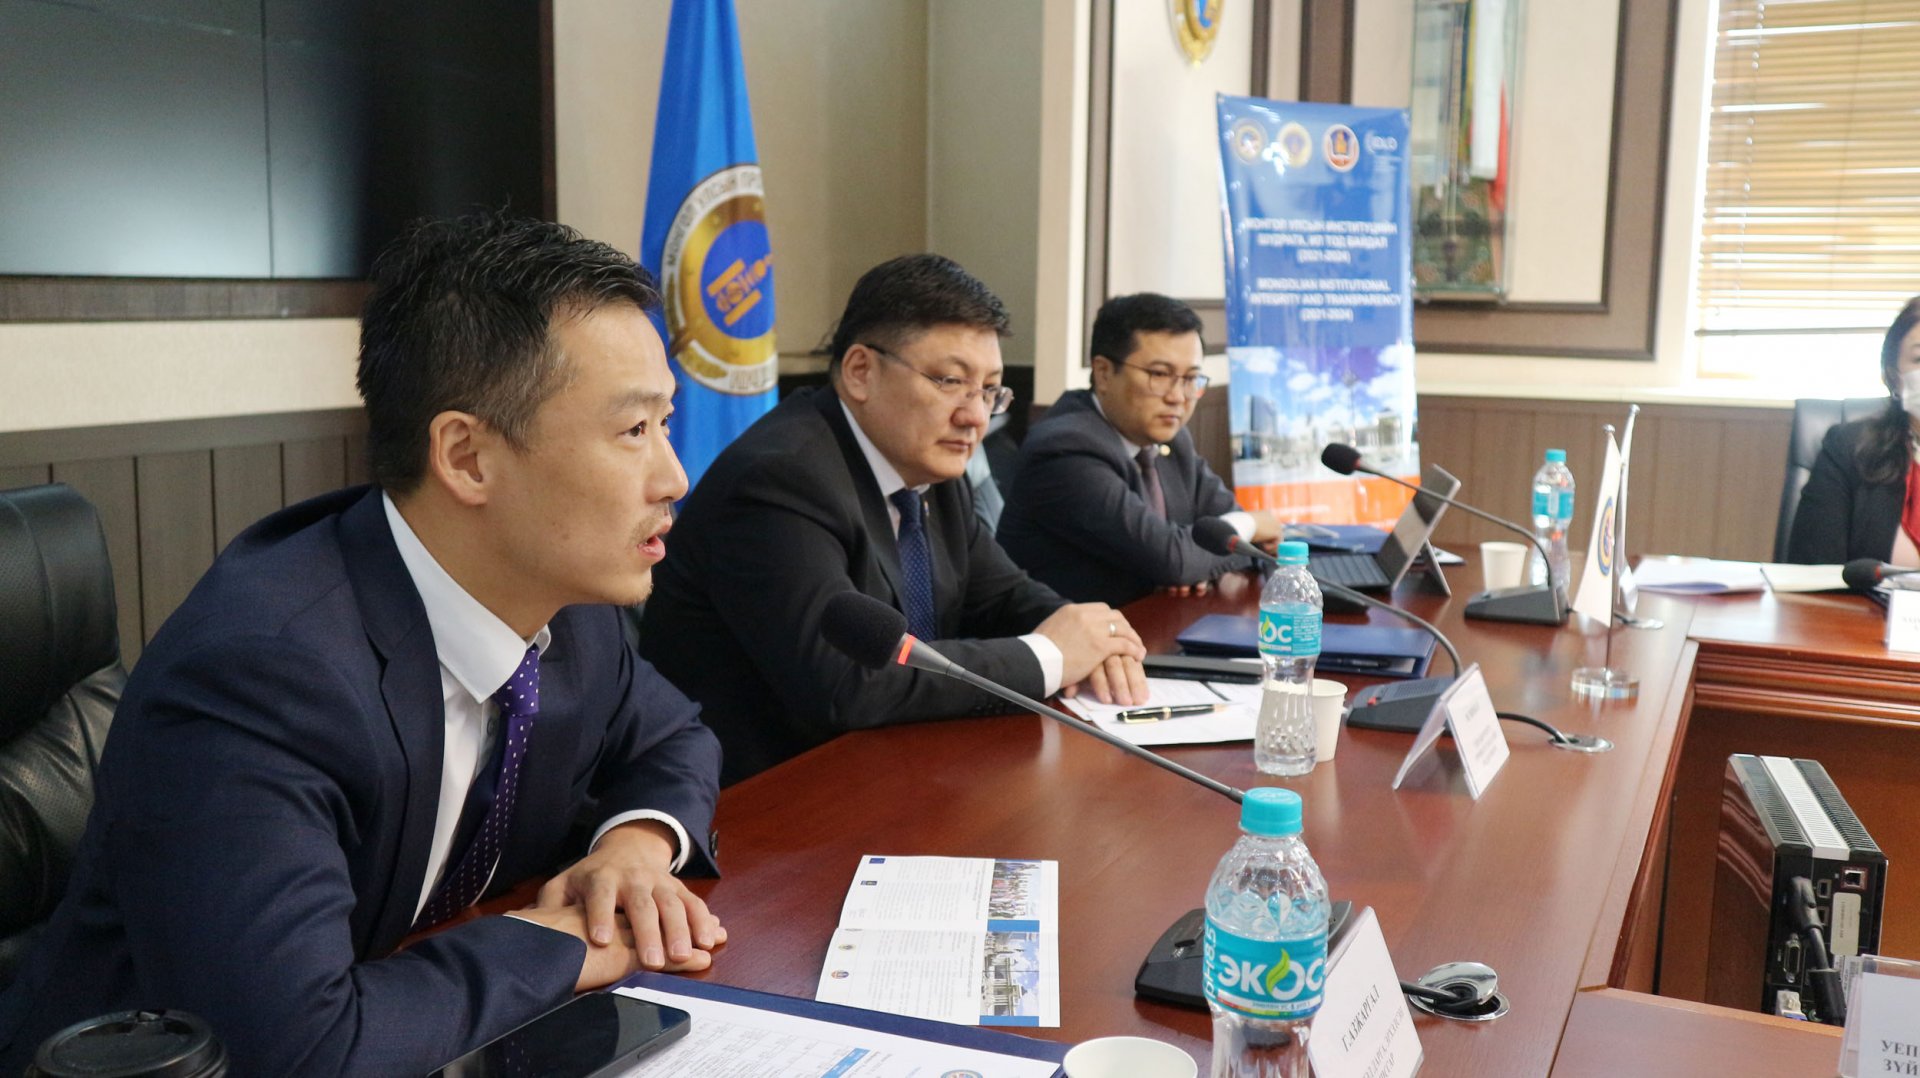 “Монгол Улсын институцийн шударга, ил тод байдал” авлигатай тэмцэх төслийн ажлын хэсгийн уулзалт боллоо